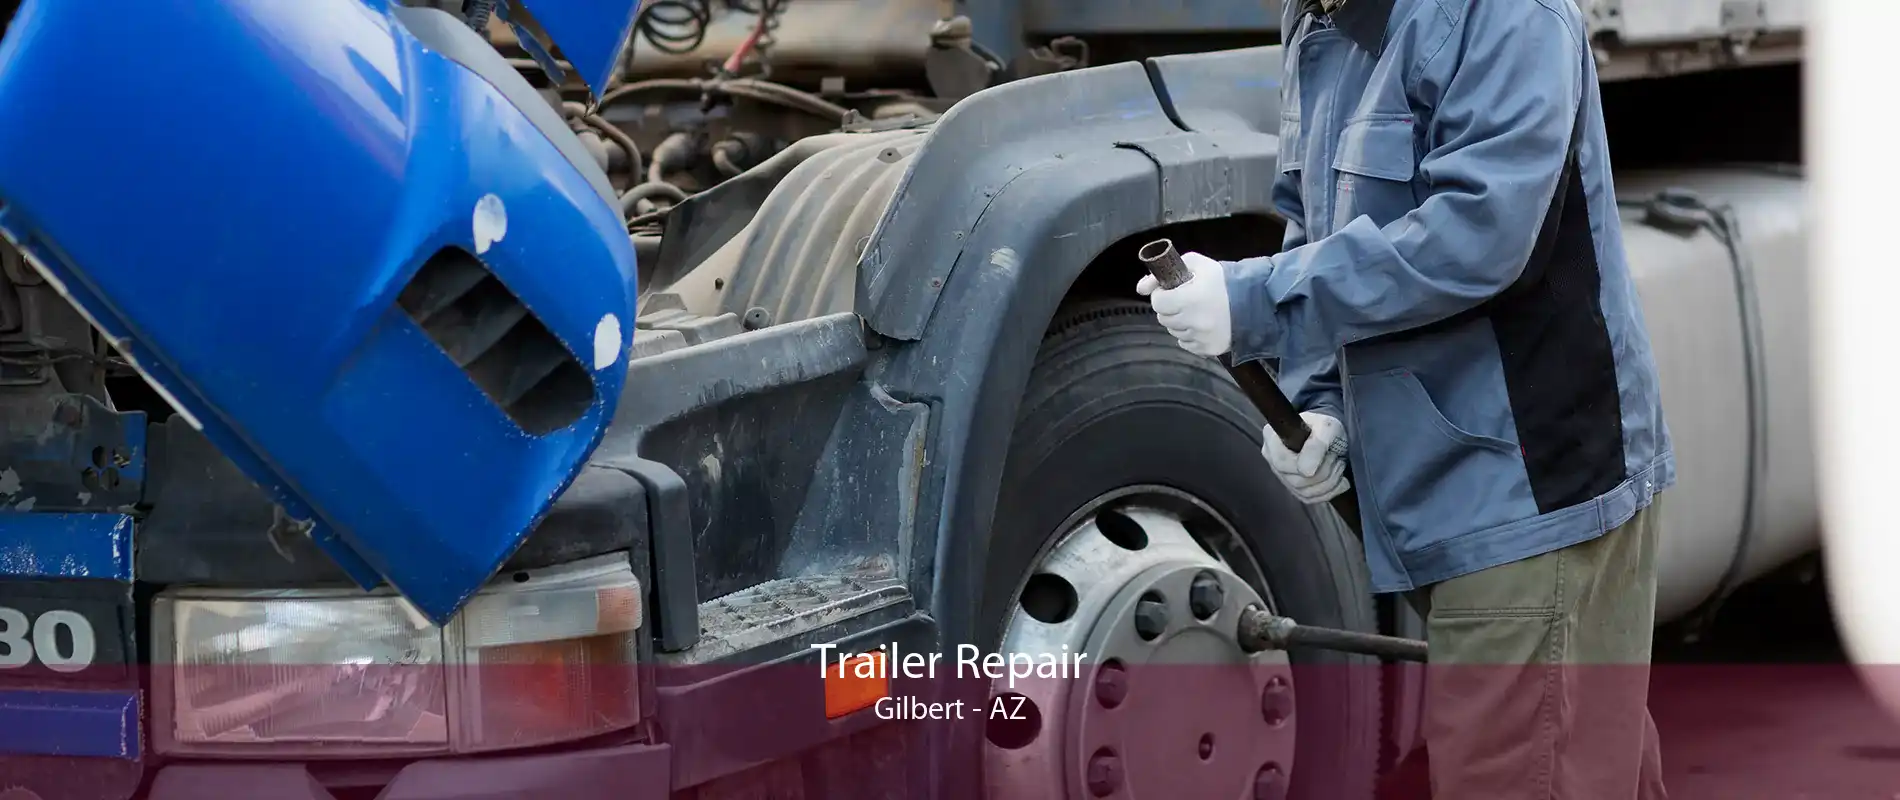 Trailer Repair Gilbert - AZ